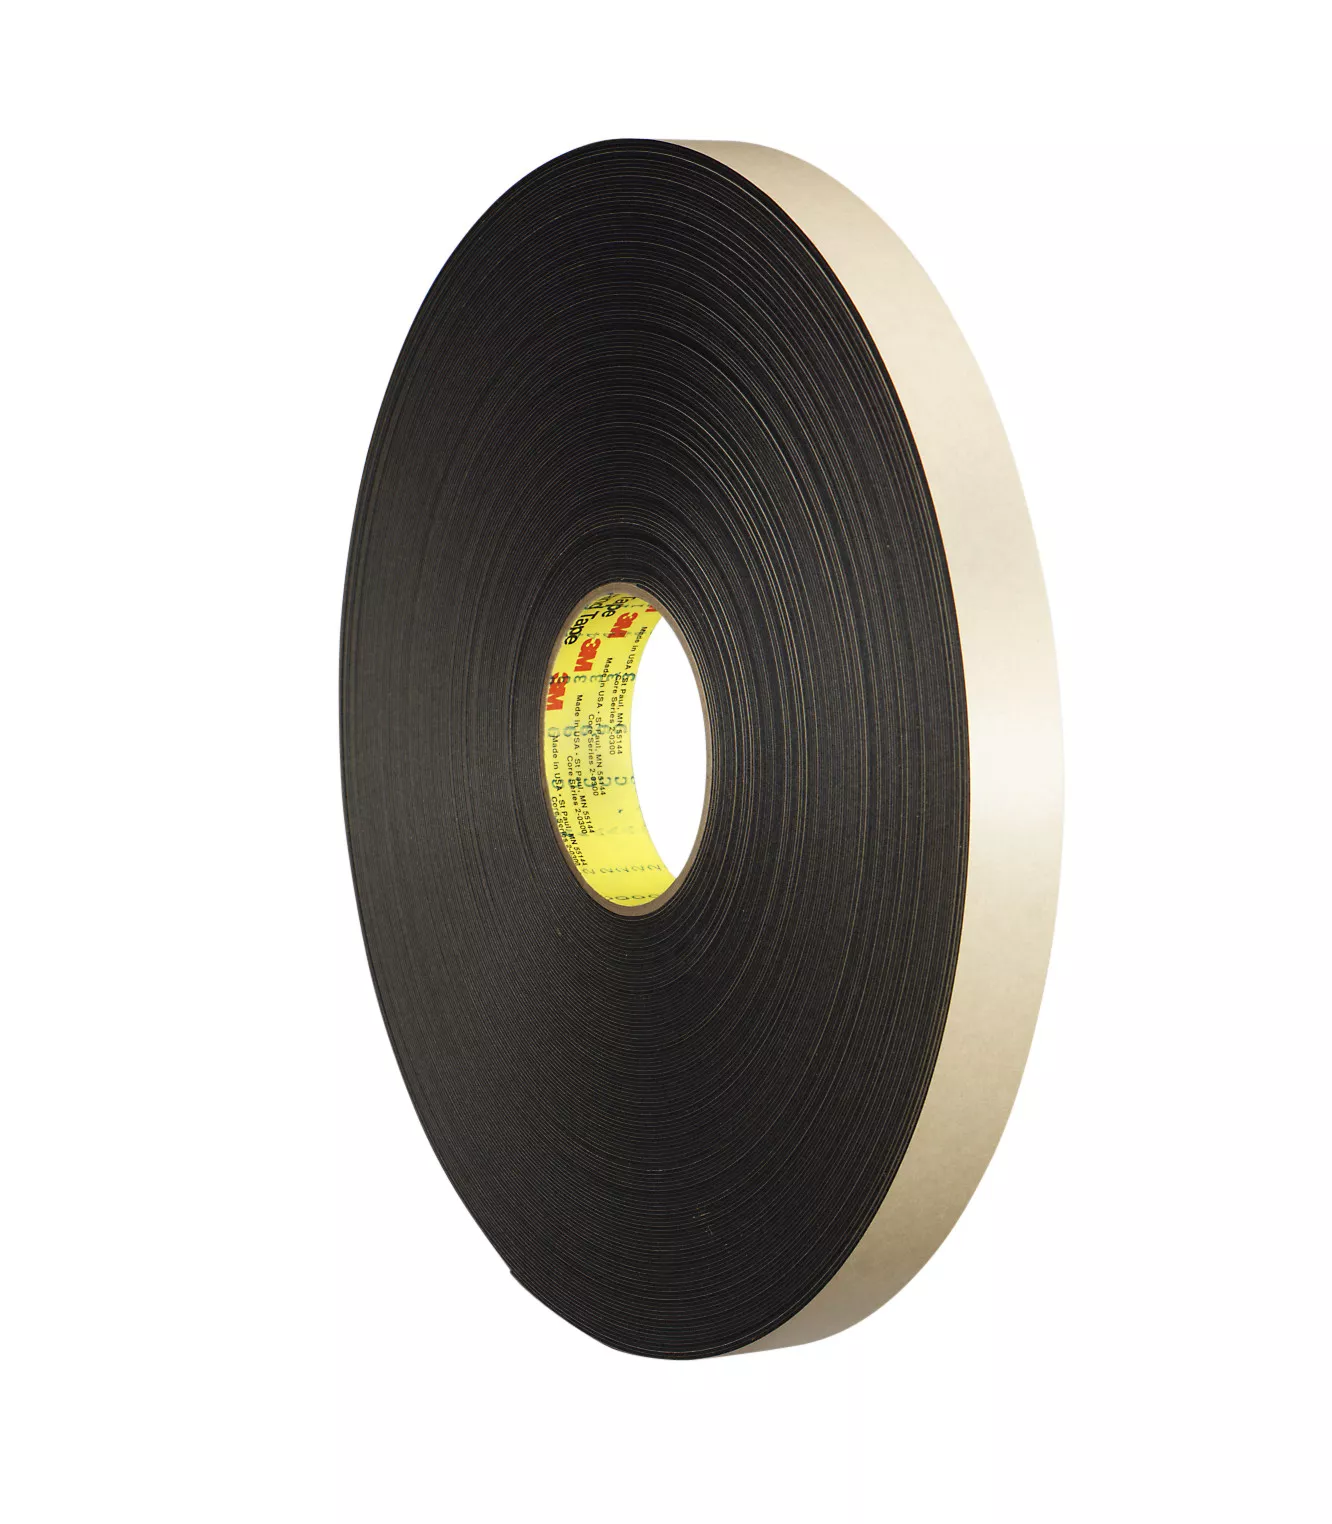 3M™ Double Coated Polyethylene Foam Tape 4492B, Black, 48 in x 72 yd, 31
mil, 1 Roll/Case